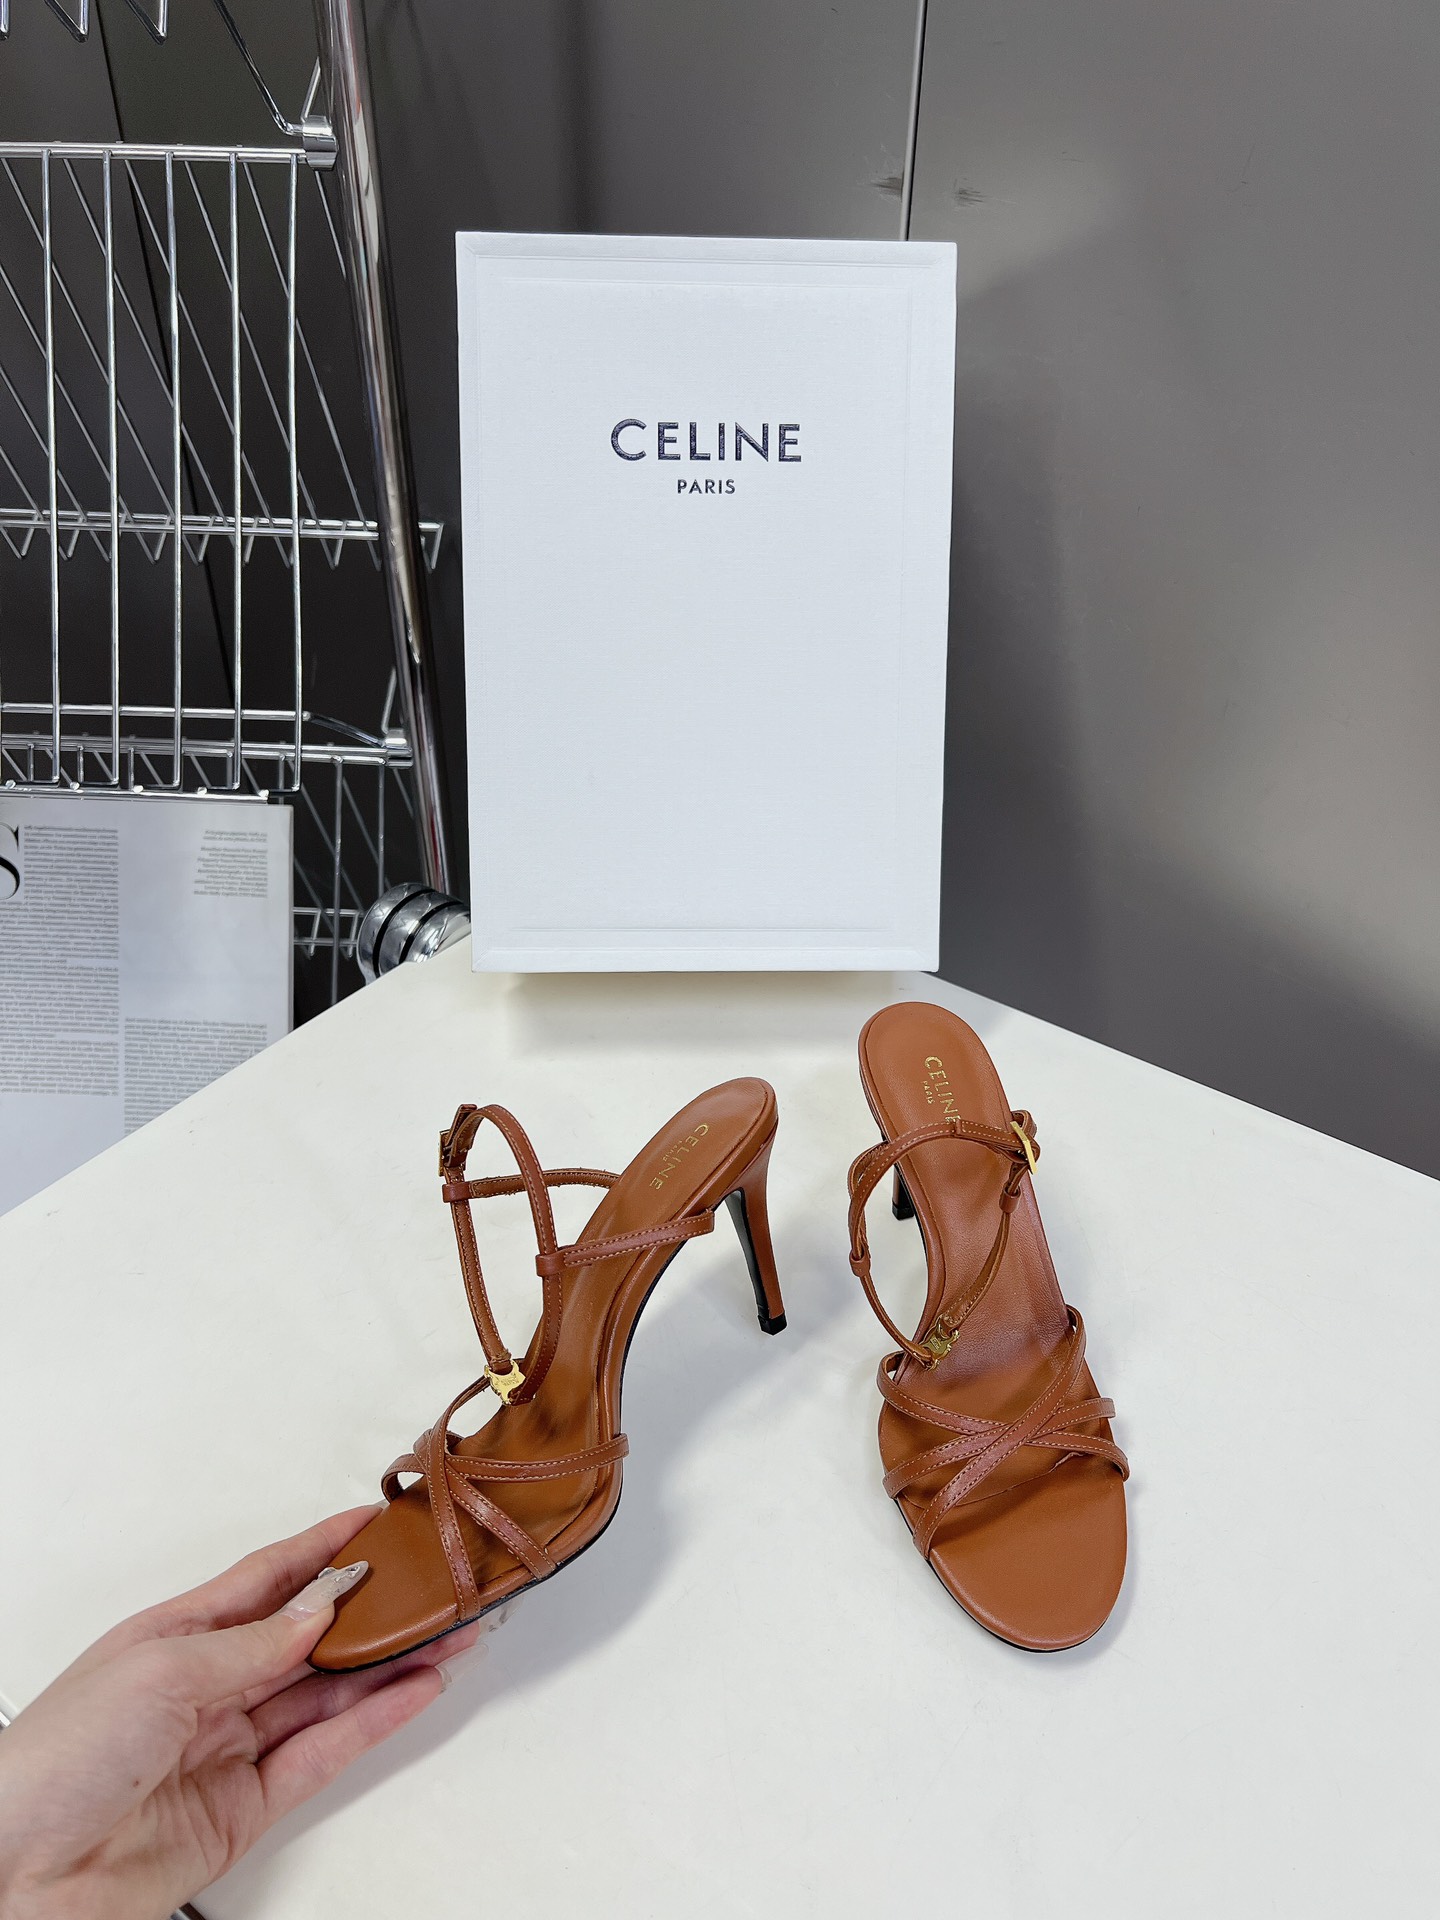 Celine思琳春夏凯旋门时装鞋柔美的露脚设计脚踝绑带上脚真的超级显瘦超级美C家特定的精致凯旋门logo